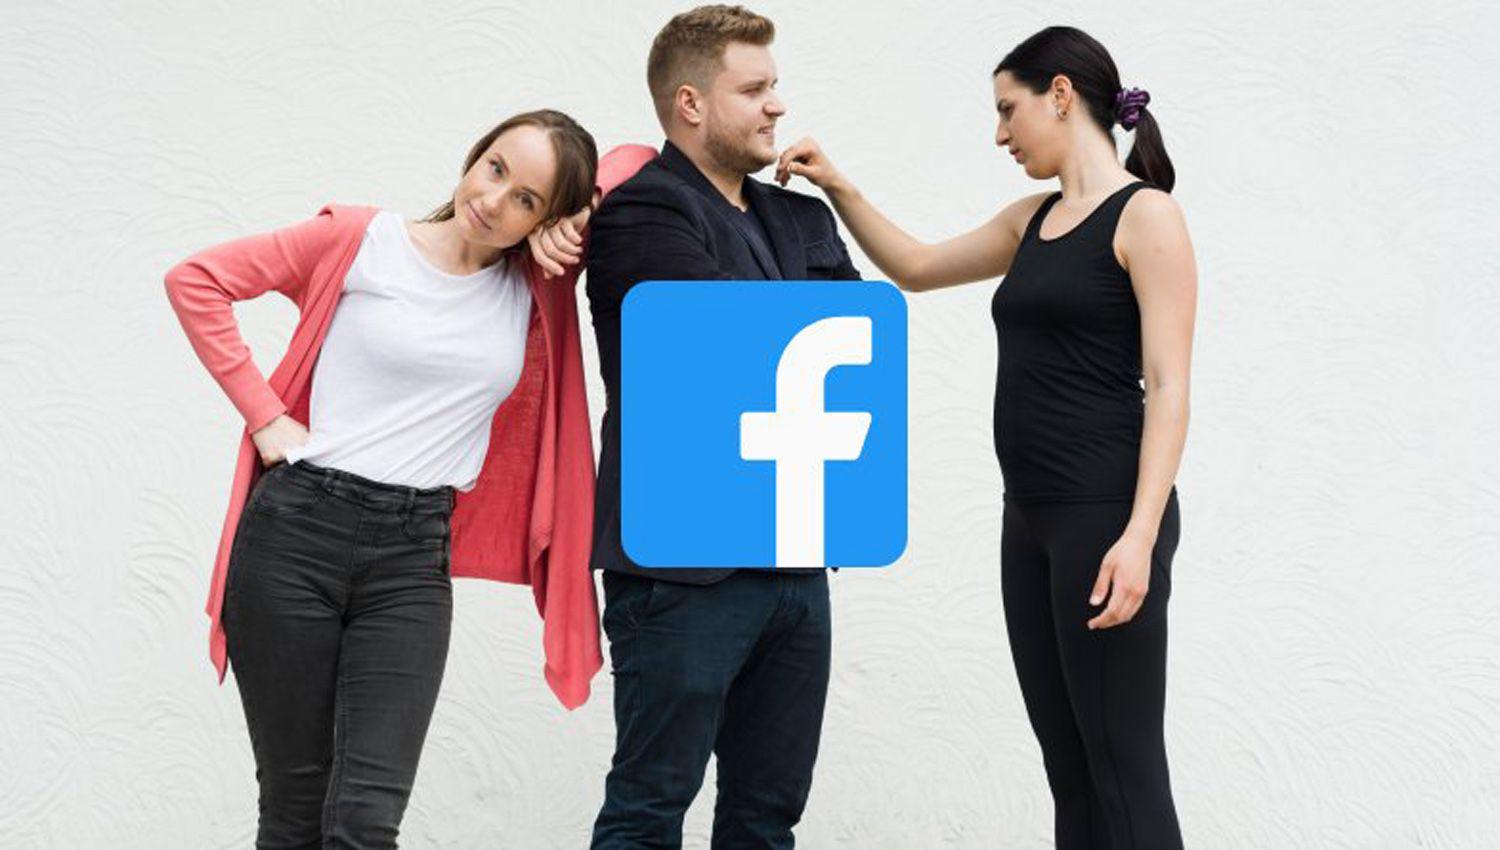 Abren un grupo de Facebook para cazar a los novios infieles